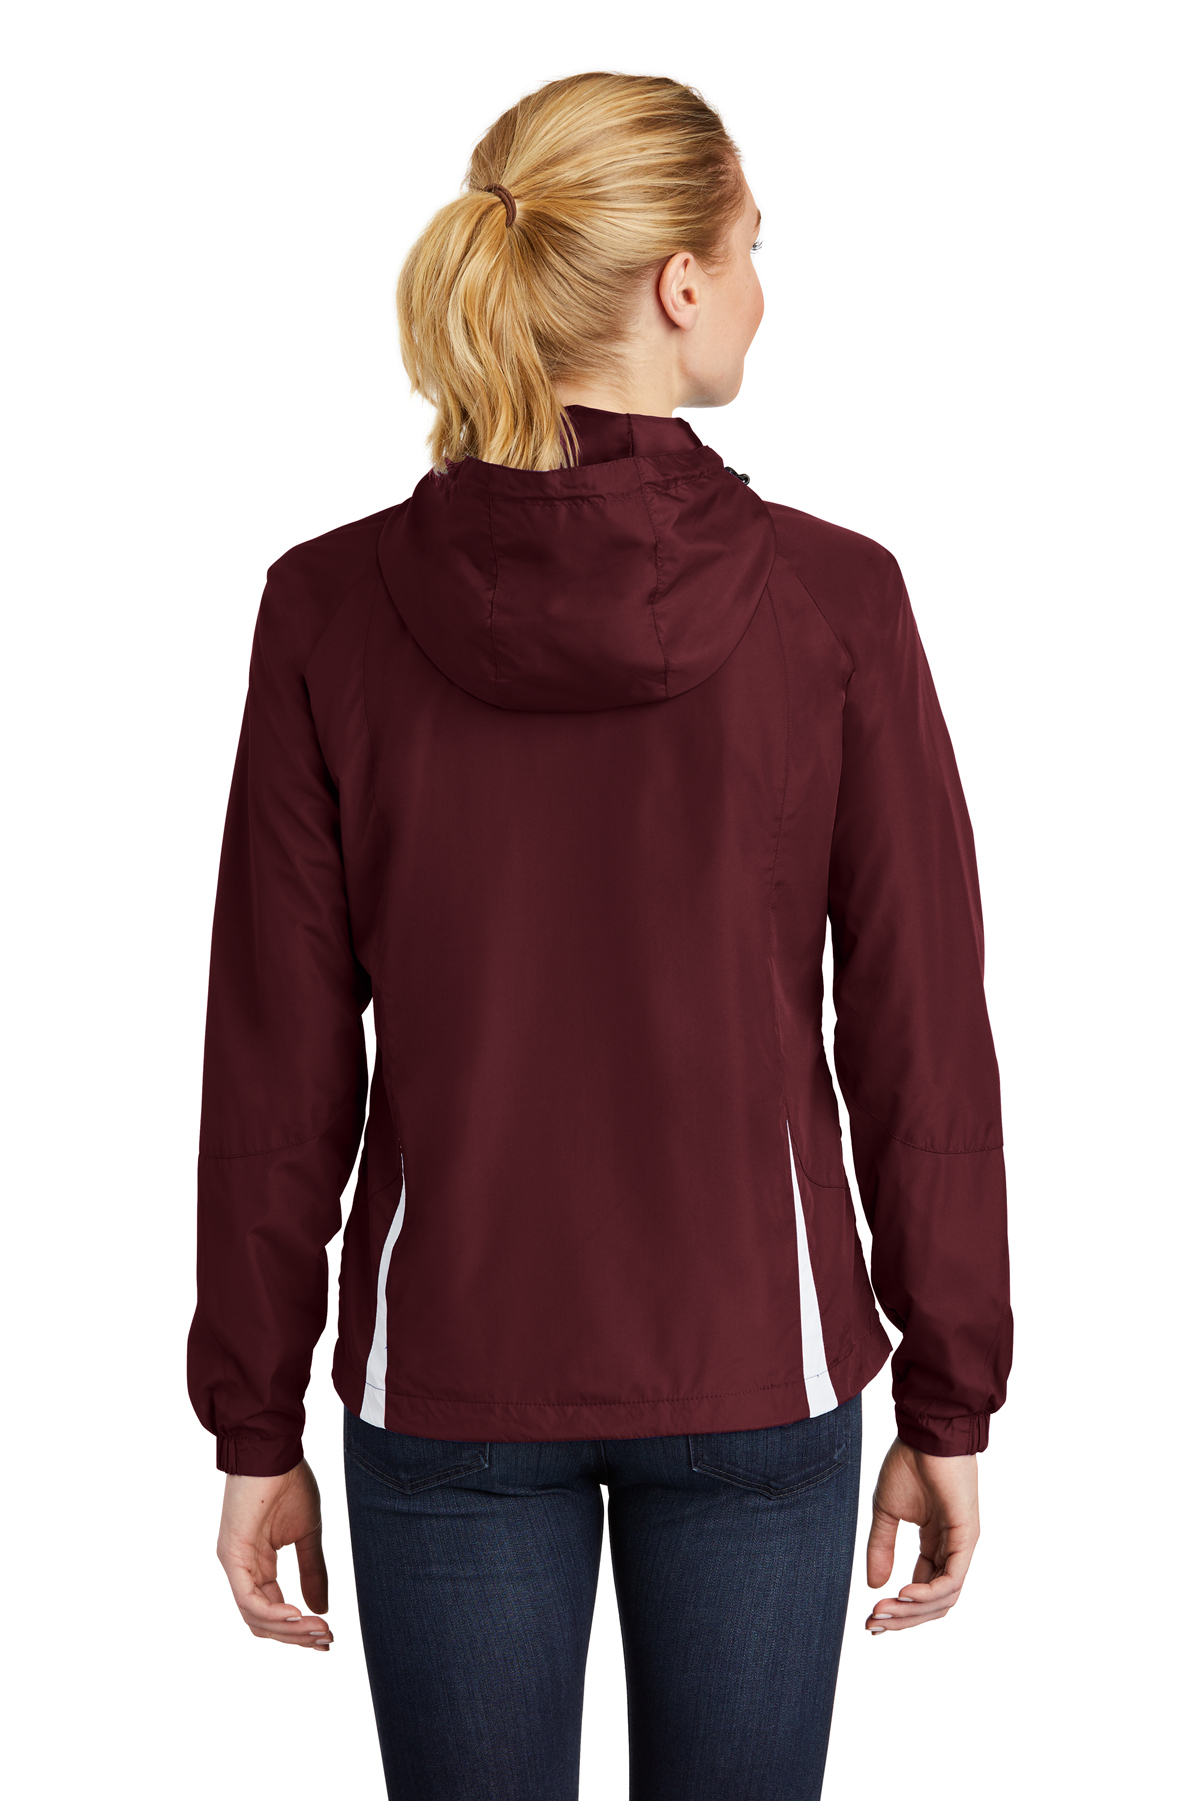 Sport-Tek Ladies Colorblock Hooded Raglan Jacket | Product | SanMar